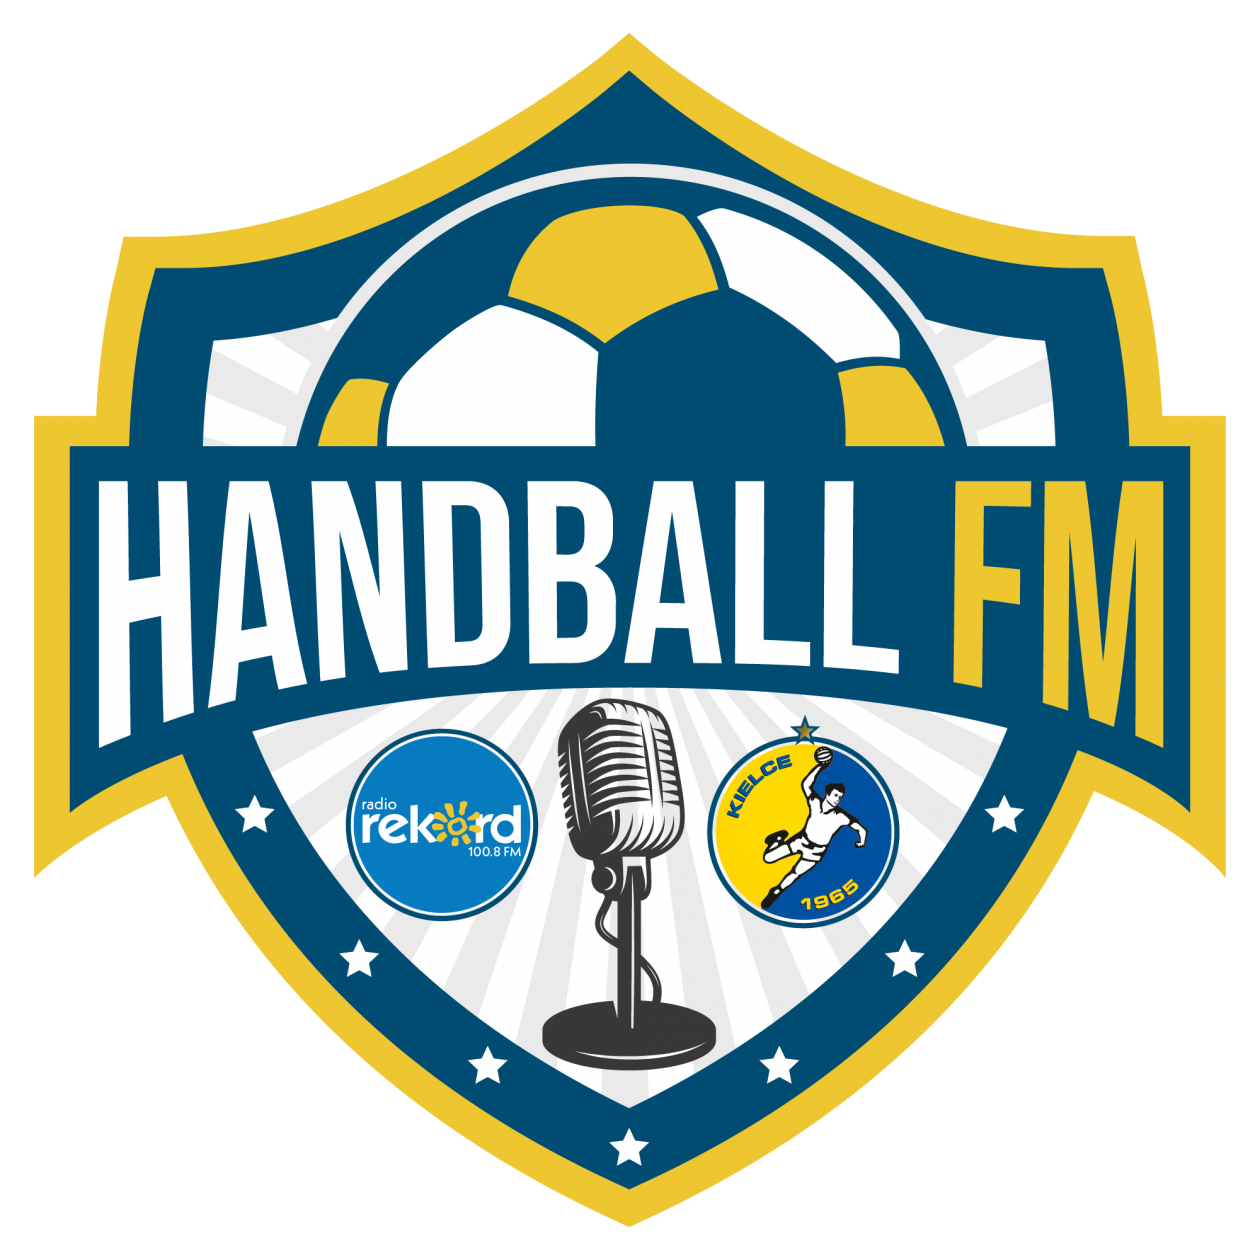 HANDBALL FM odc. 1 Tałant Dujszebajew